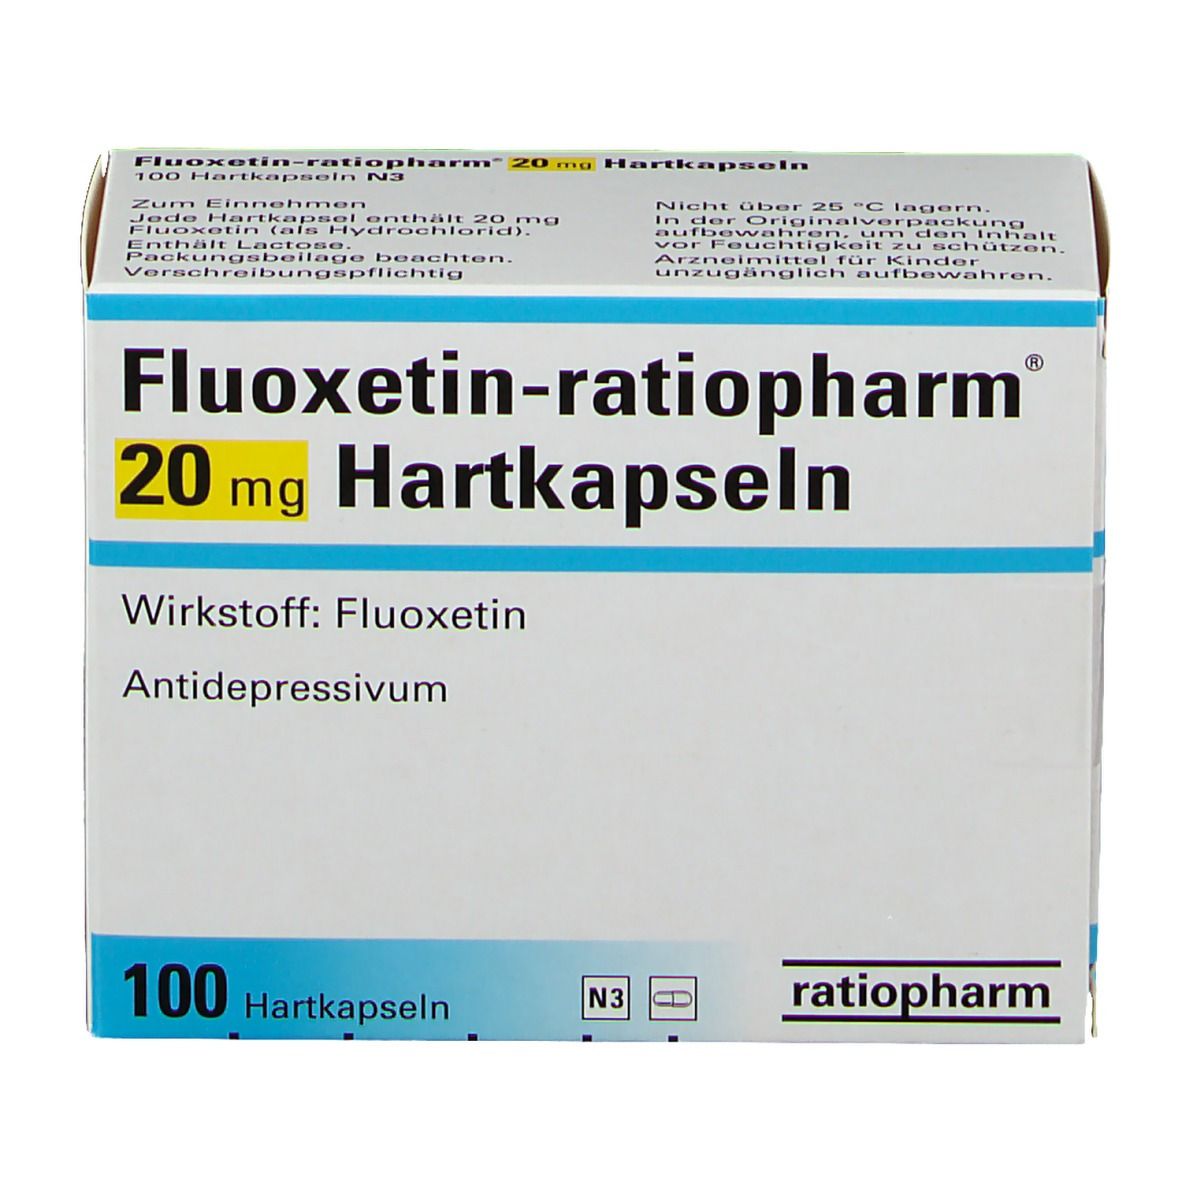 Fluoxetin-ratiopharm® 20 mg Hartkapseln